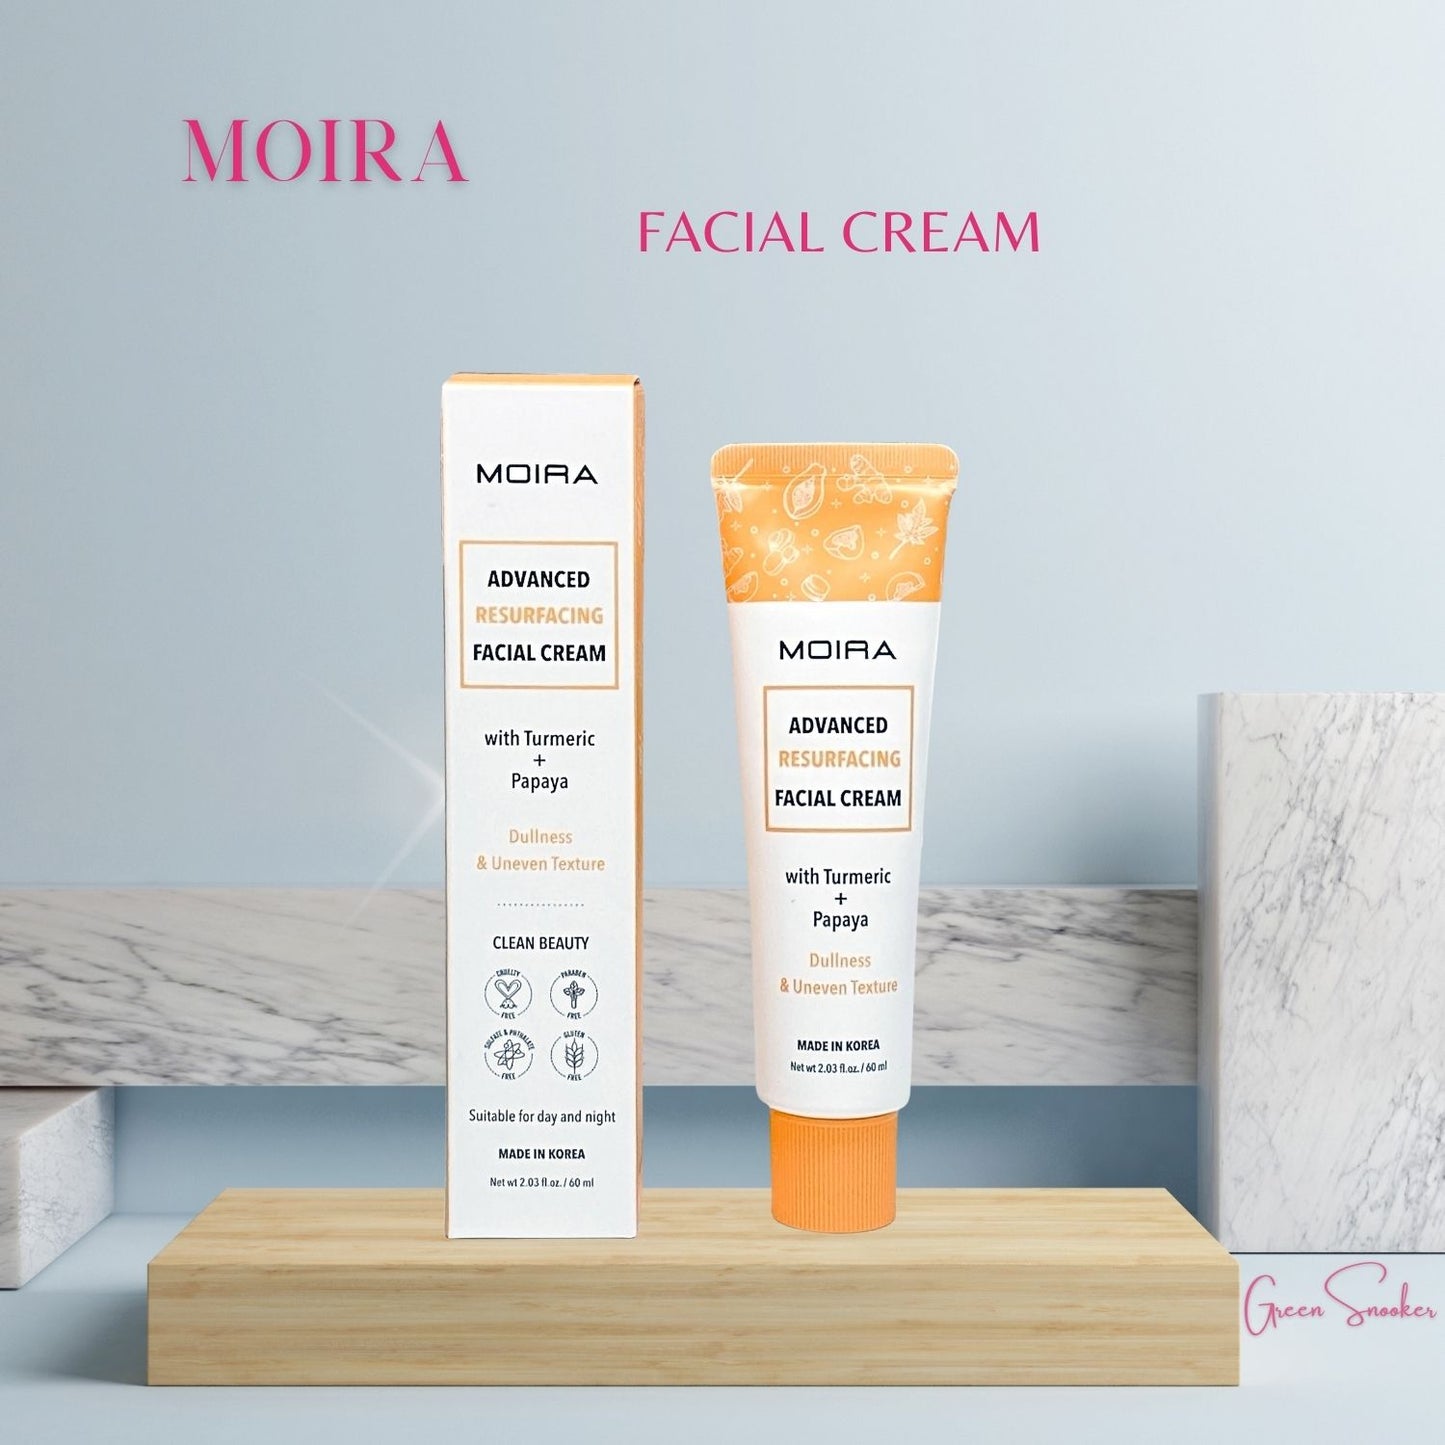 Moira Cosmetics, Facial Cream, Korean Cosmetics